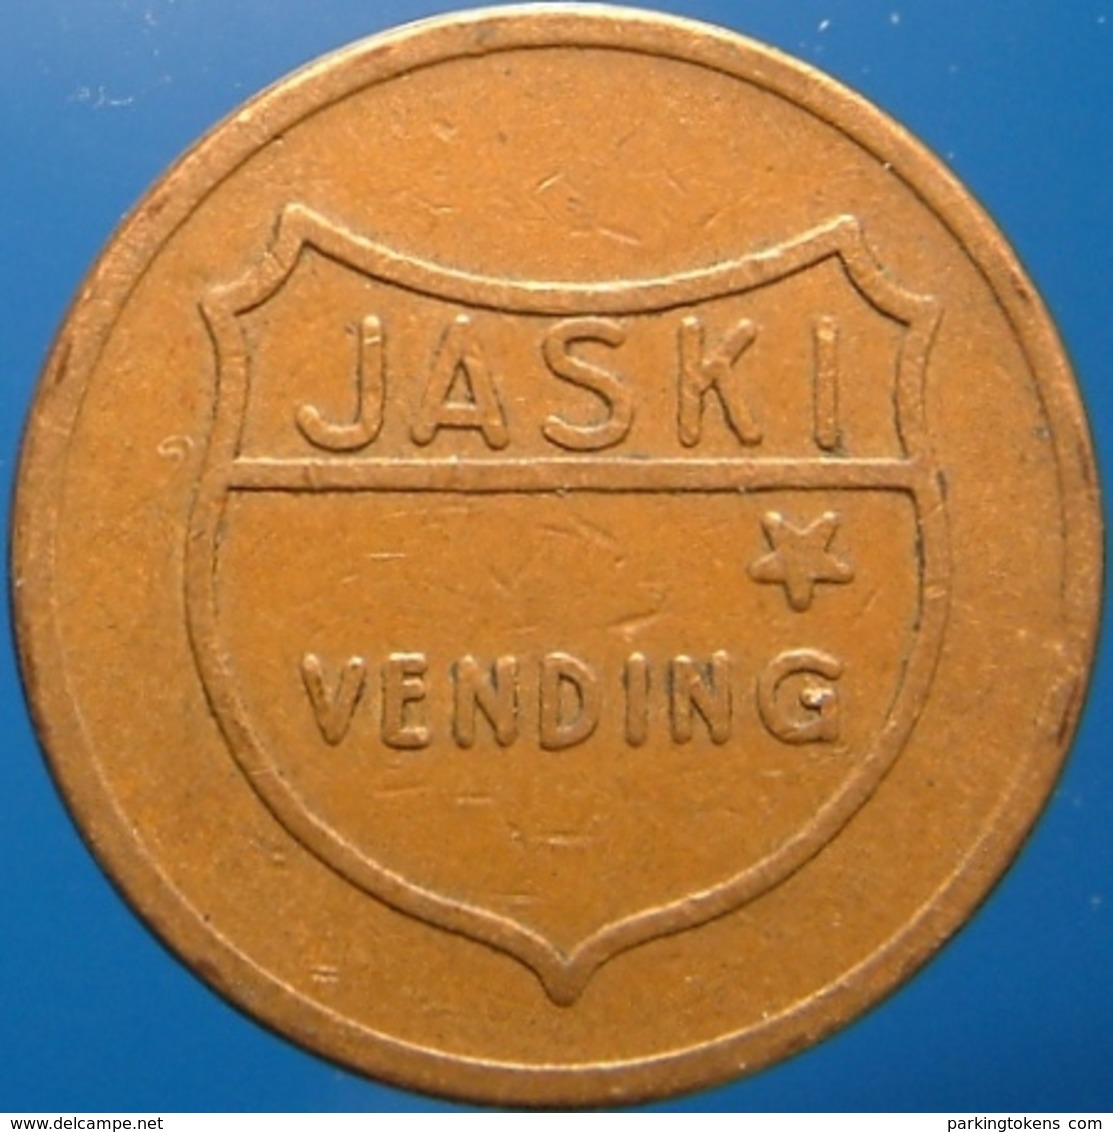 KB224-1 - JASKI VENDING - Hilversum. - Bz 20.0mm - Koffie Machine Penning - Coffee Machine Token - Professionals/Firms